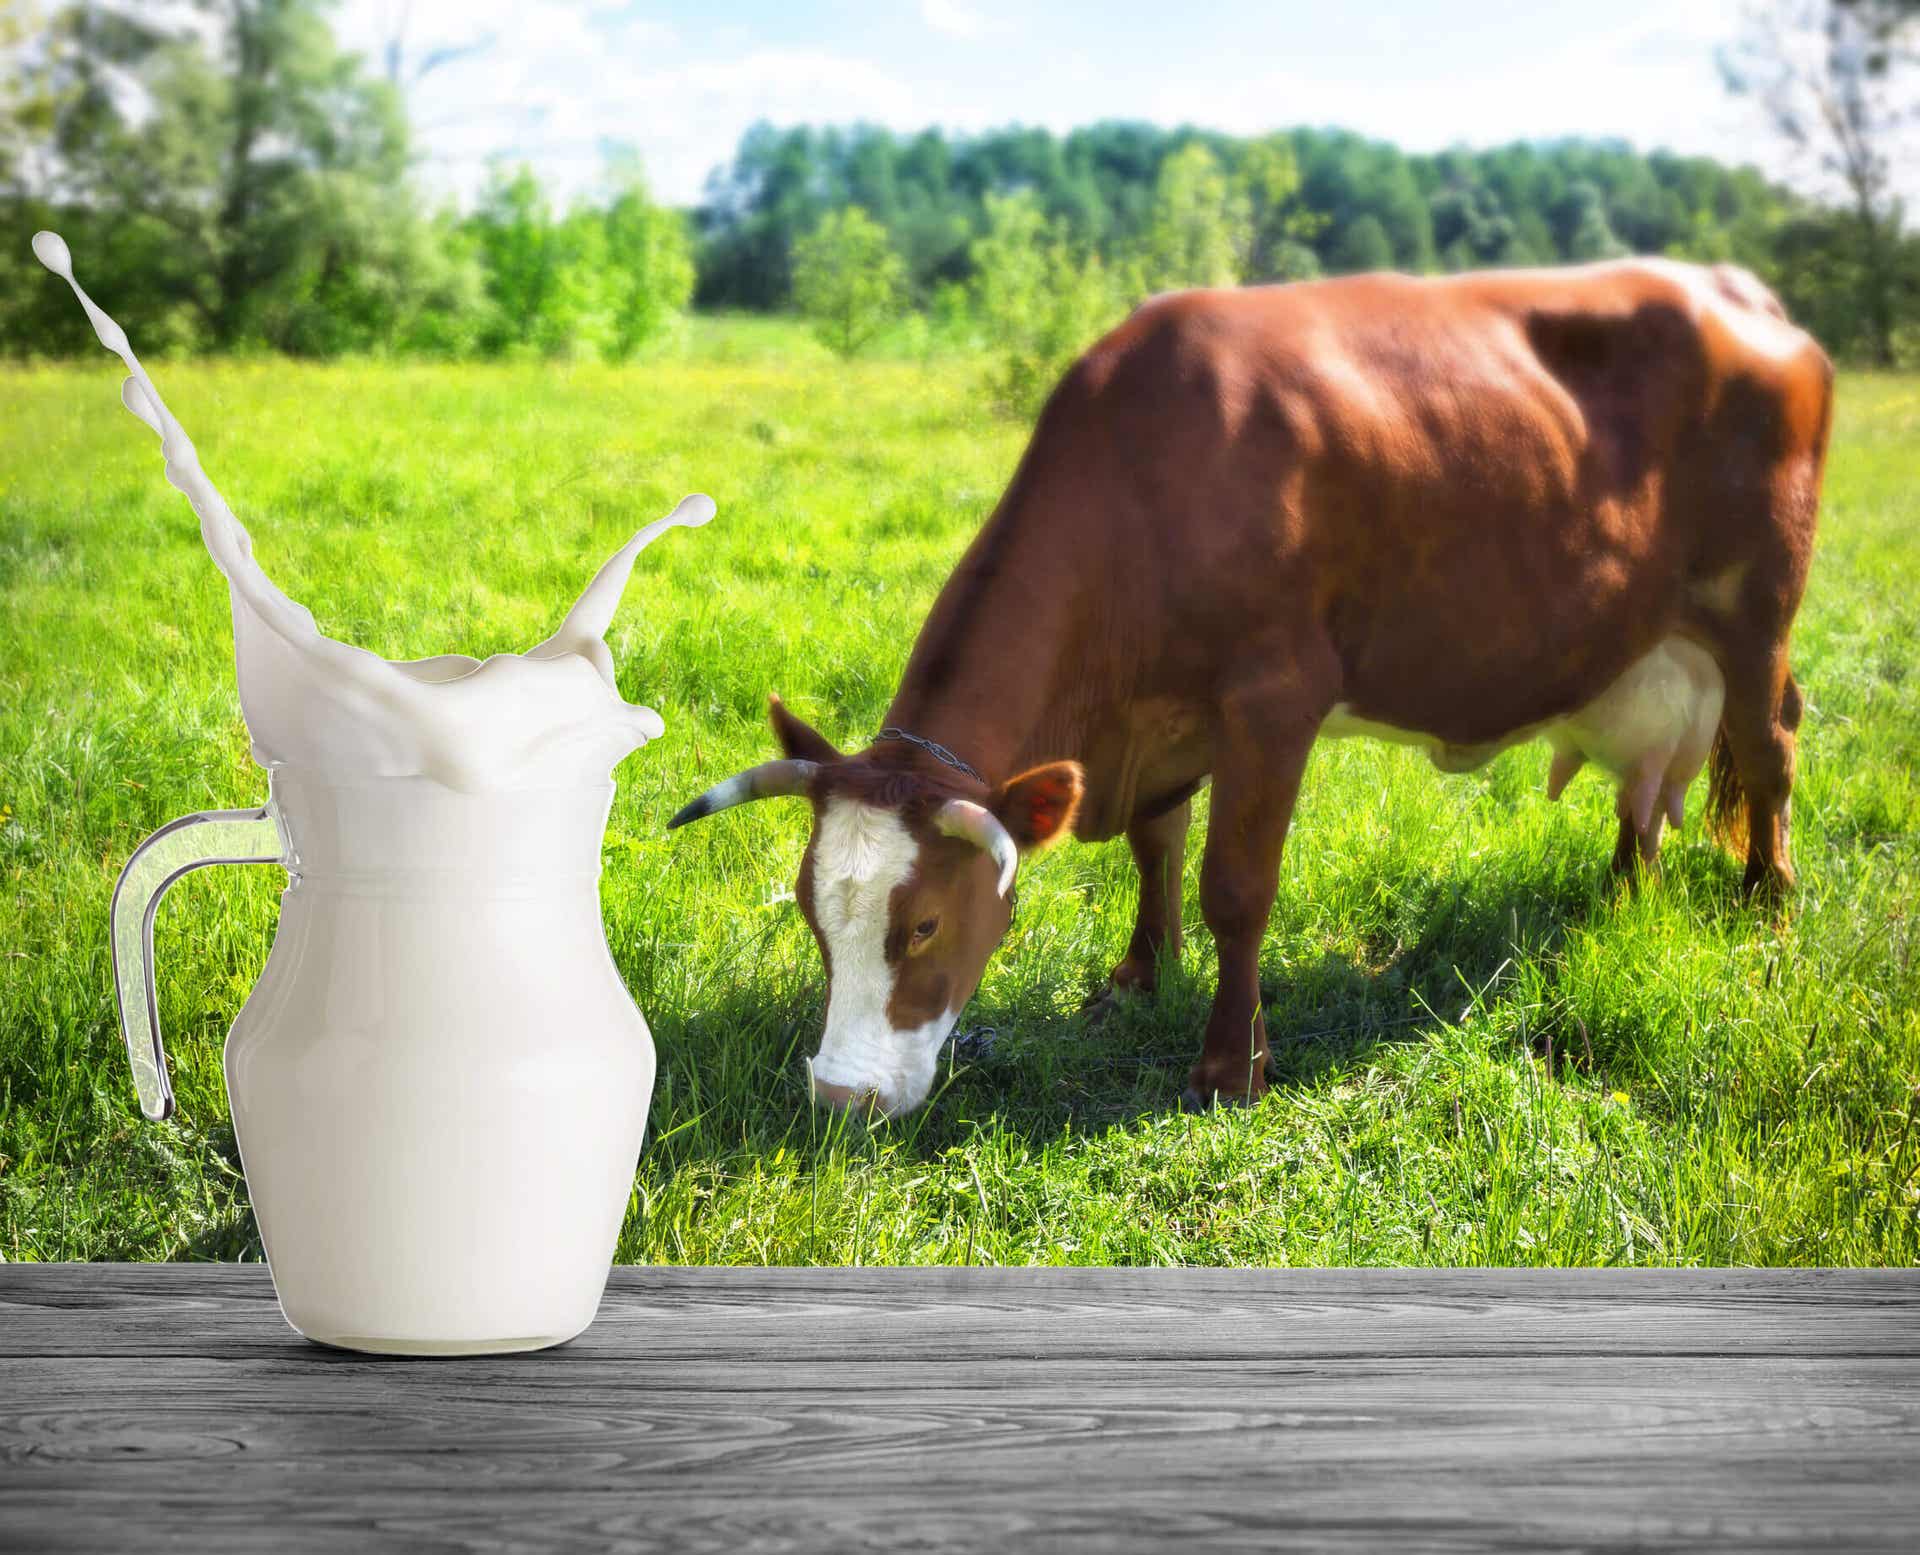 Al comparar la leche descremada versus leche entera podría existir controversia.